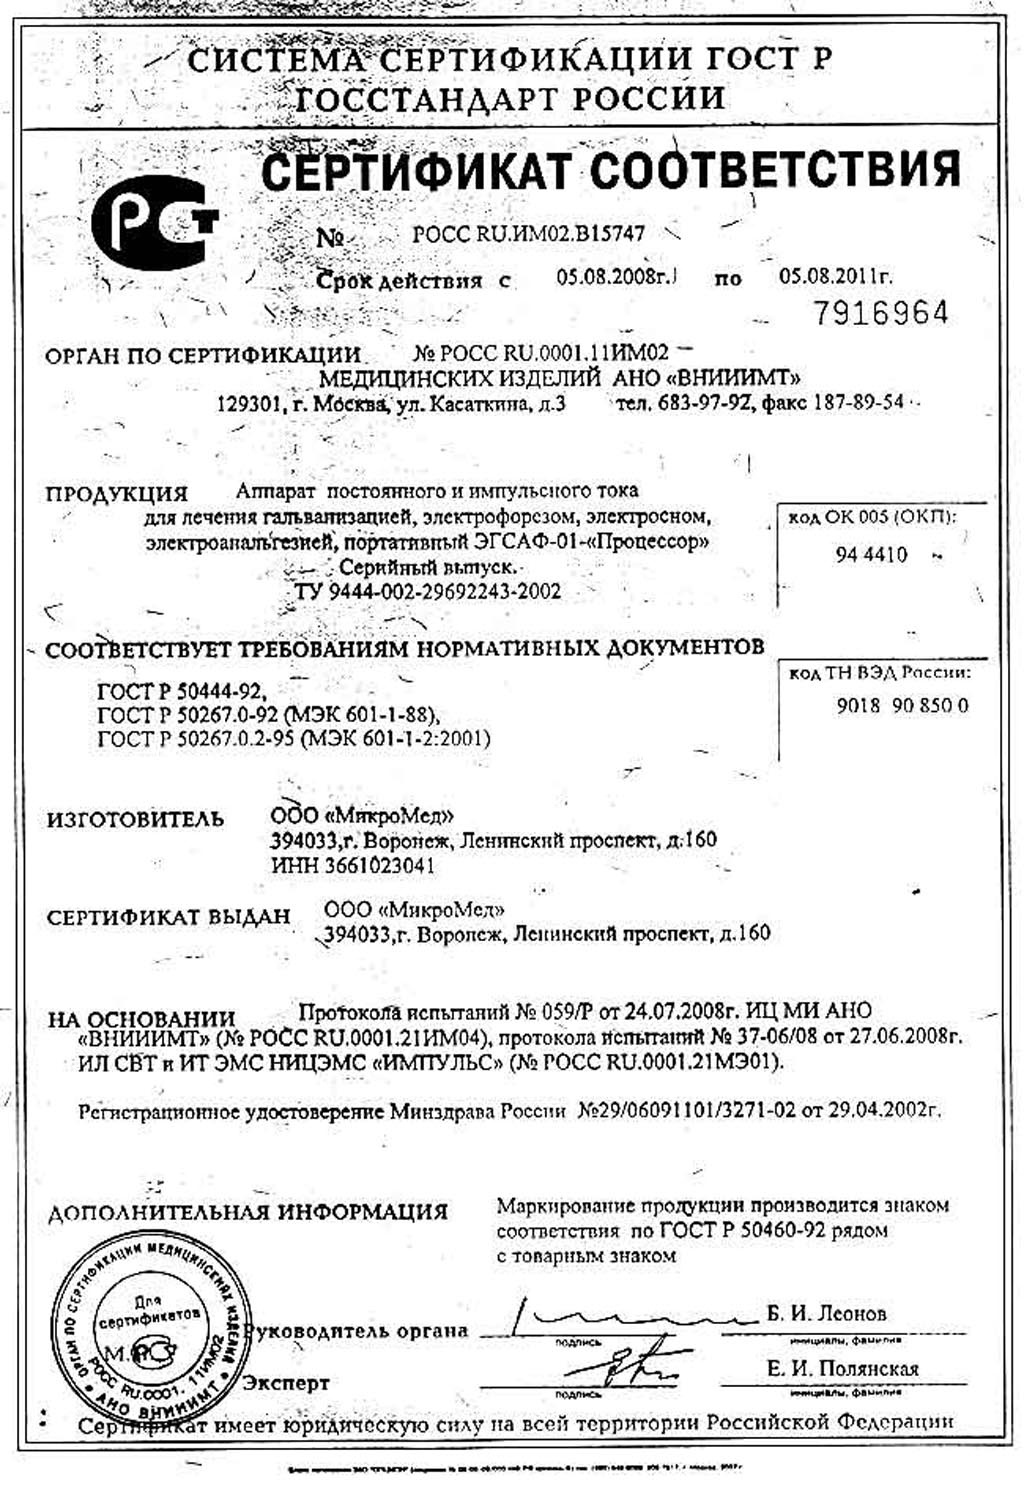 сертификат ЭГСАФ-01 Процессор